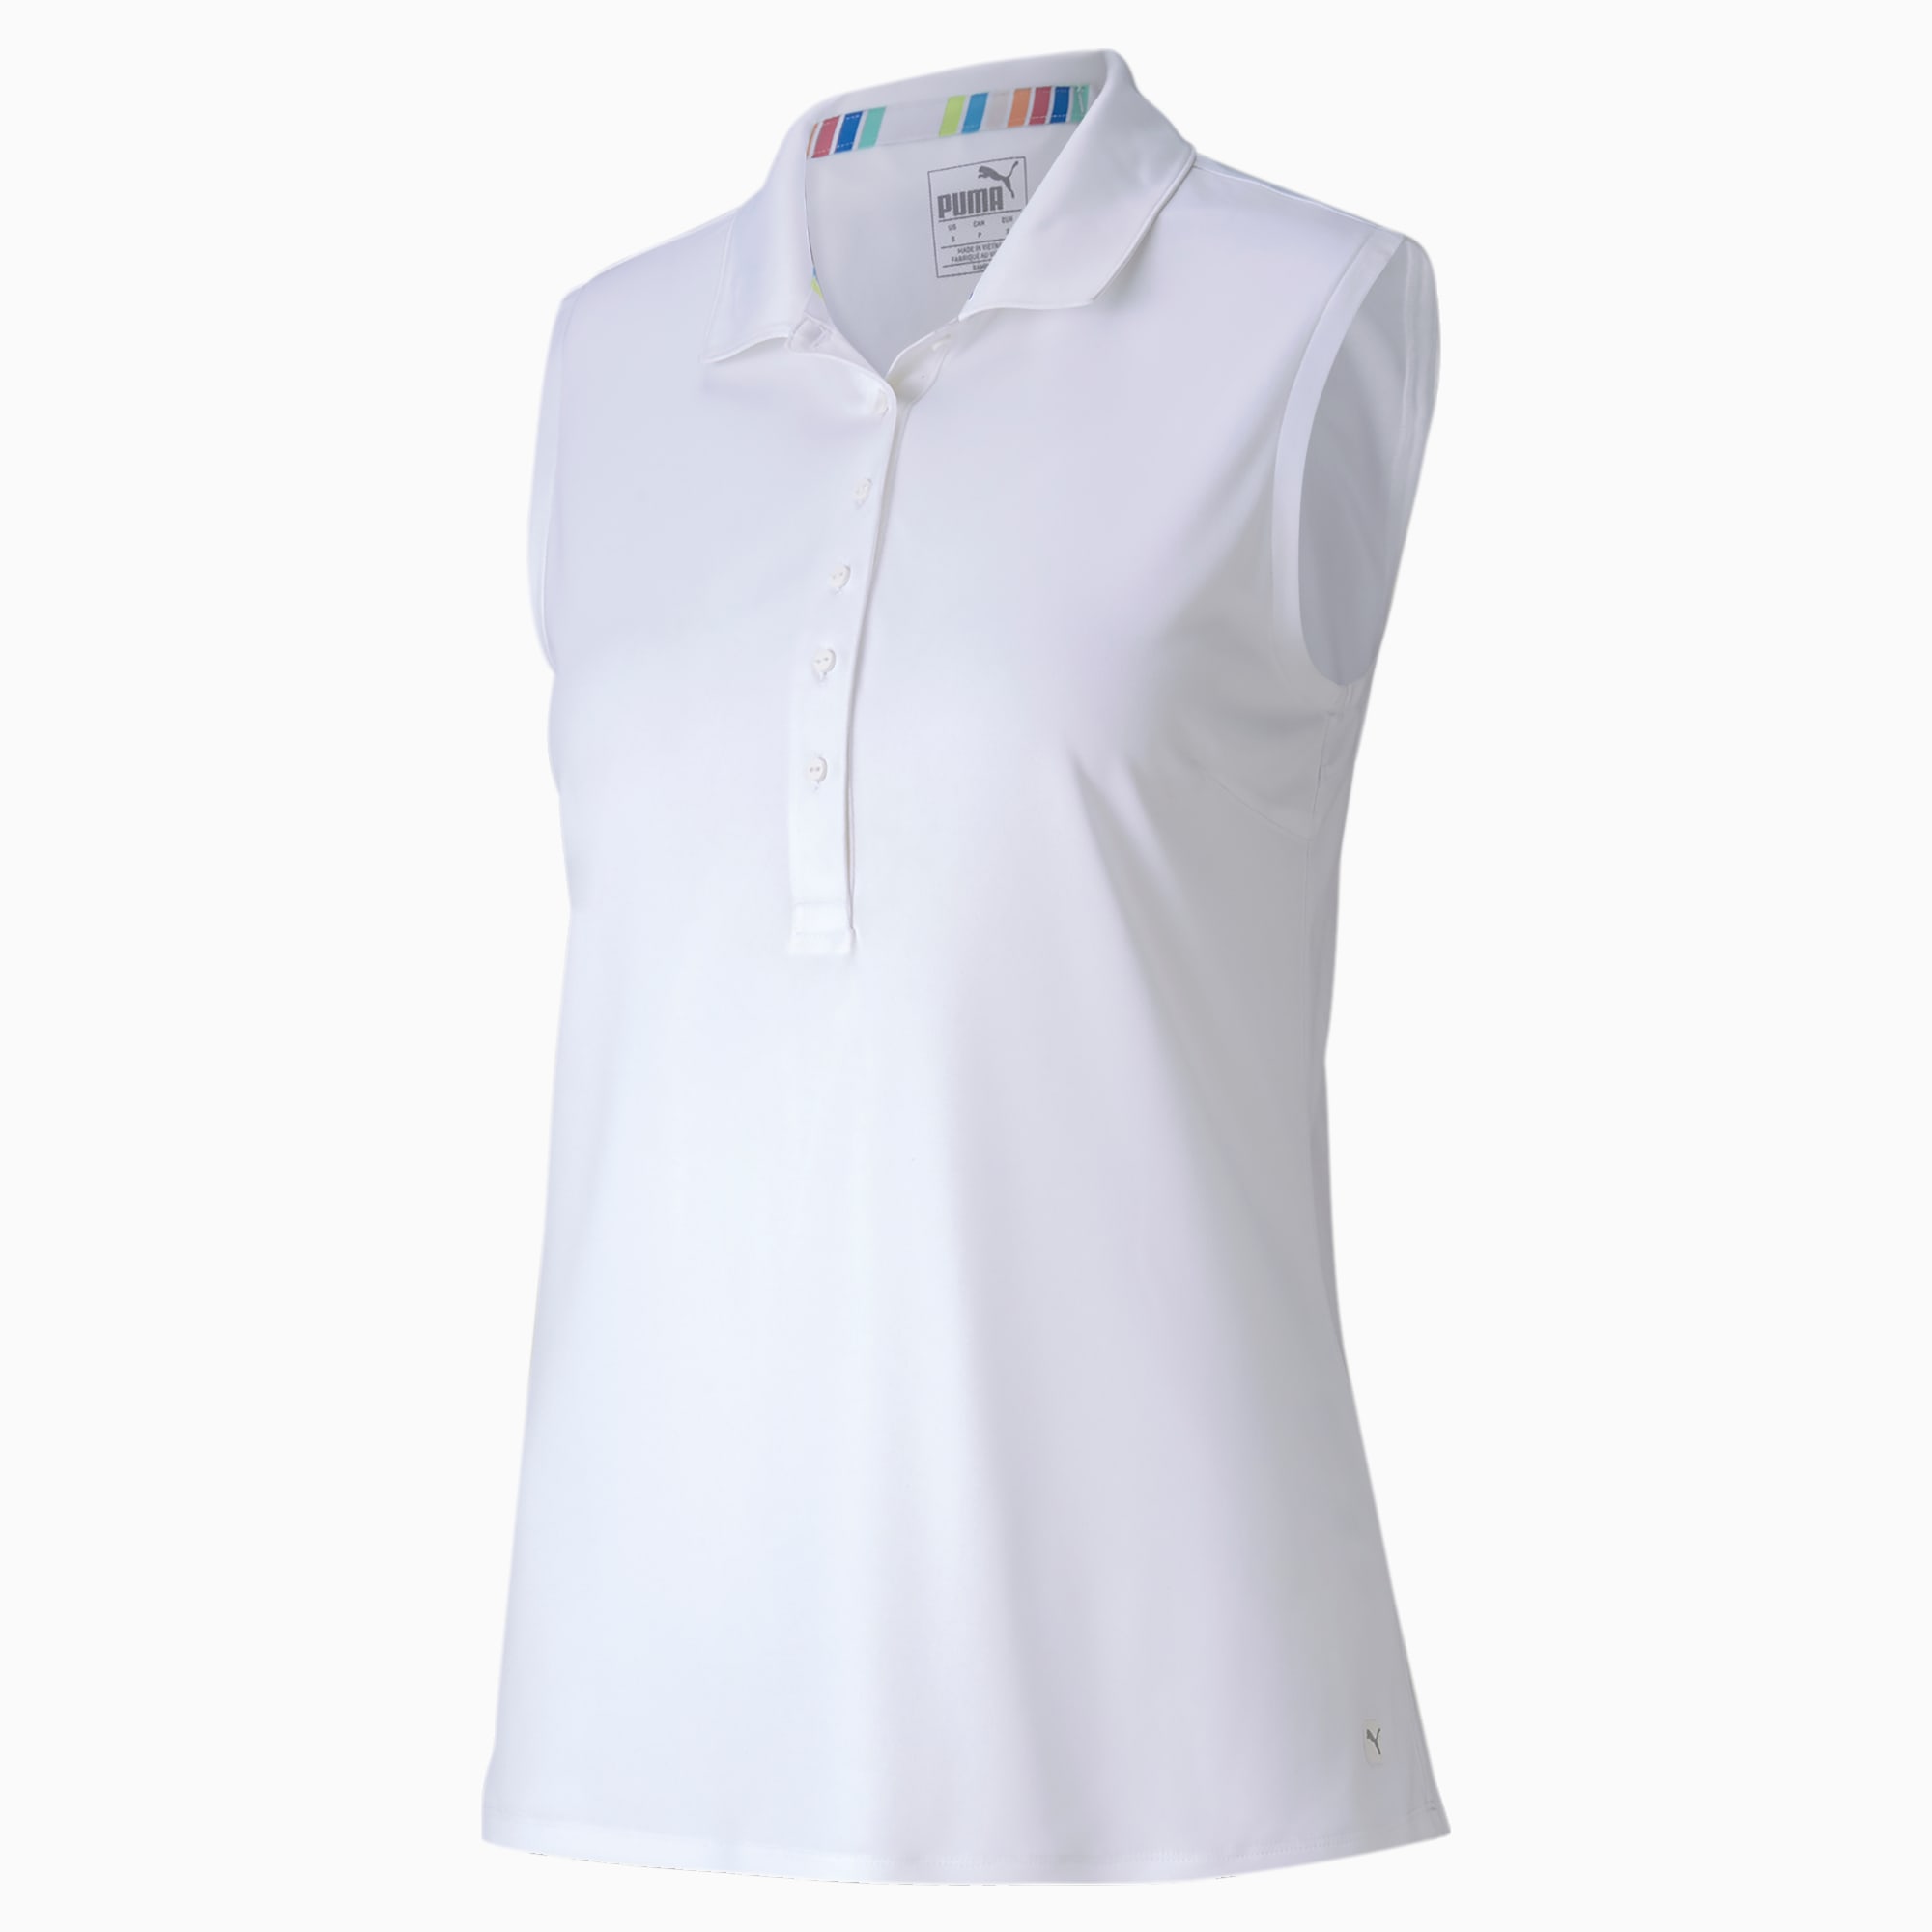 Sleeveless Women's Golf Polo Shirt 